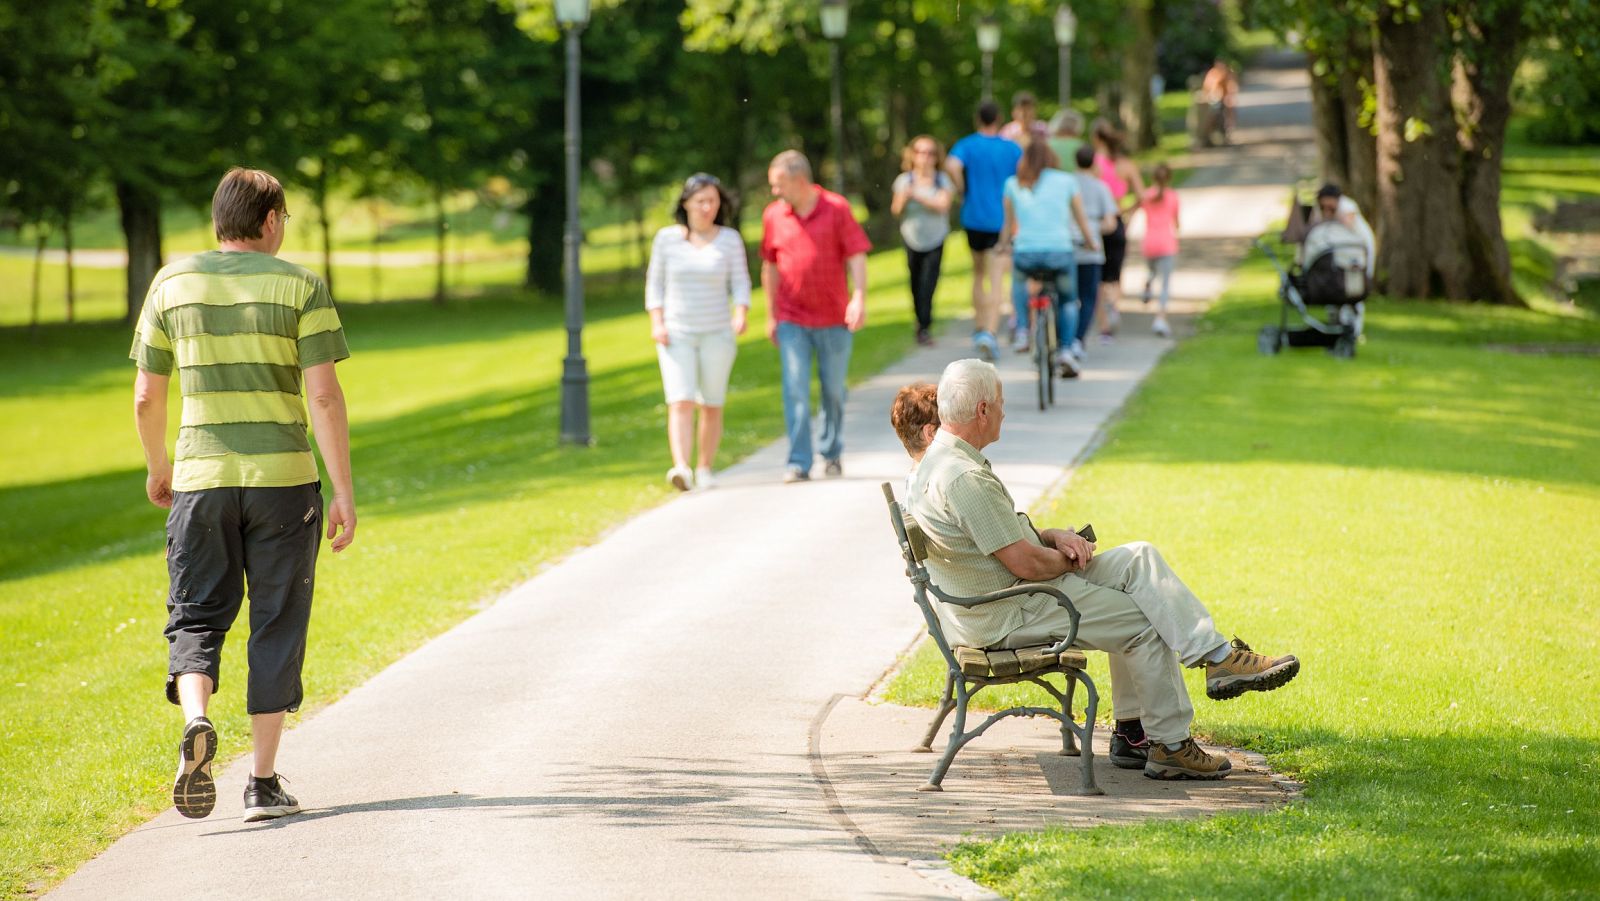 Personas con distintas edades y movilidad disfrutando de un parque urbano